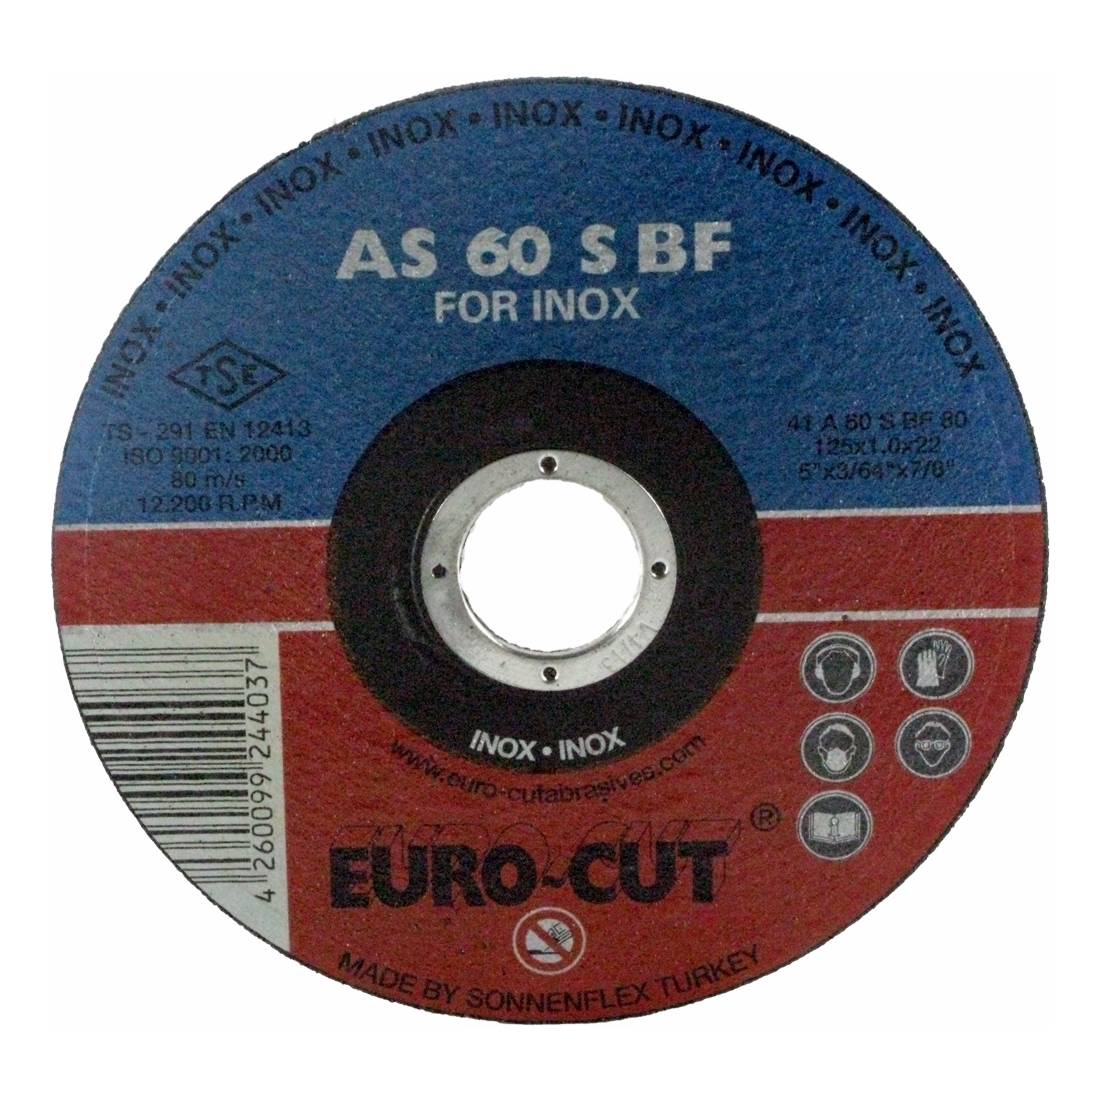 Edelstahl-Trennscheibe 'Euro Cut' 125 x 22,2 x 1,6 mm, gerade